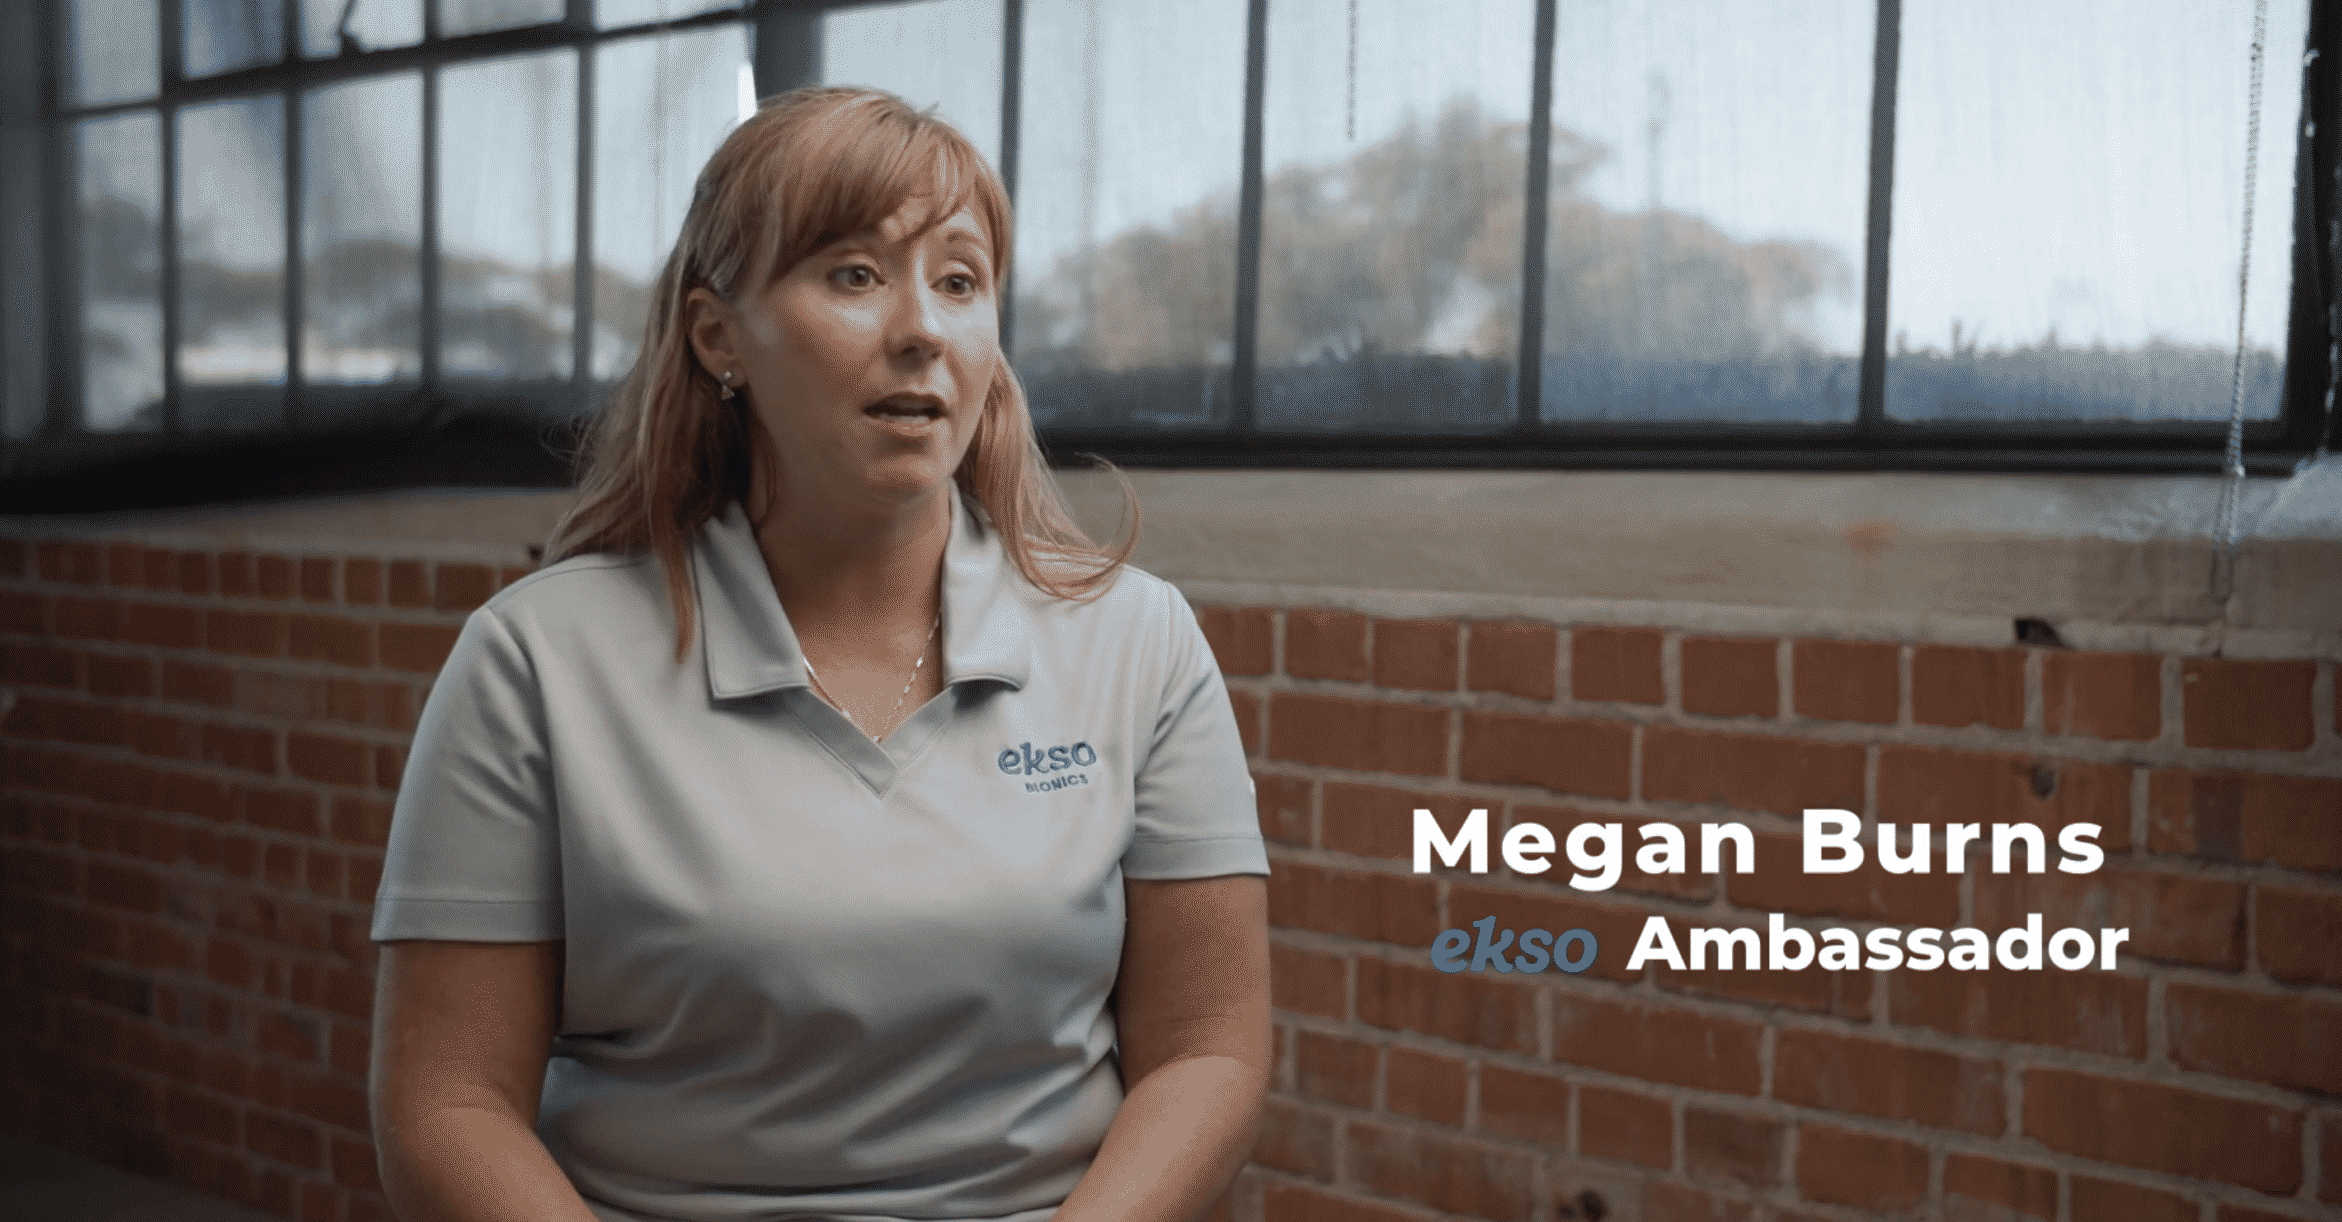 Patient Success Story: Megan